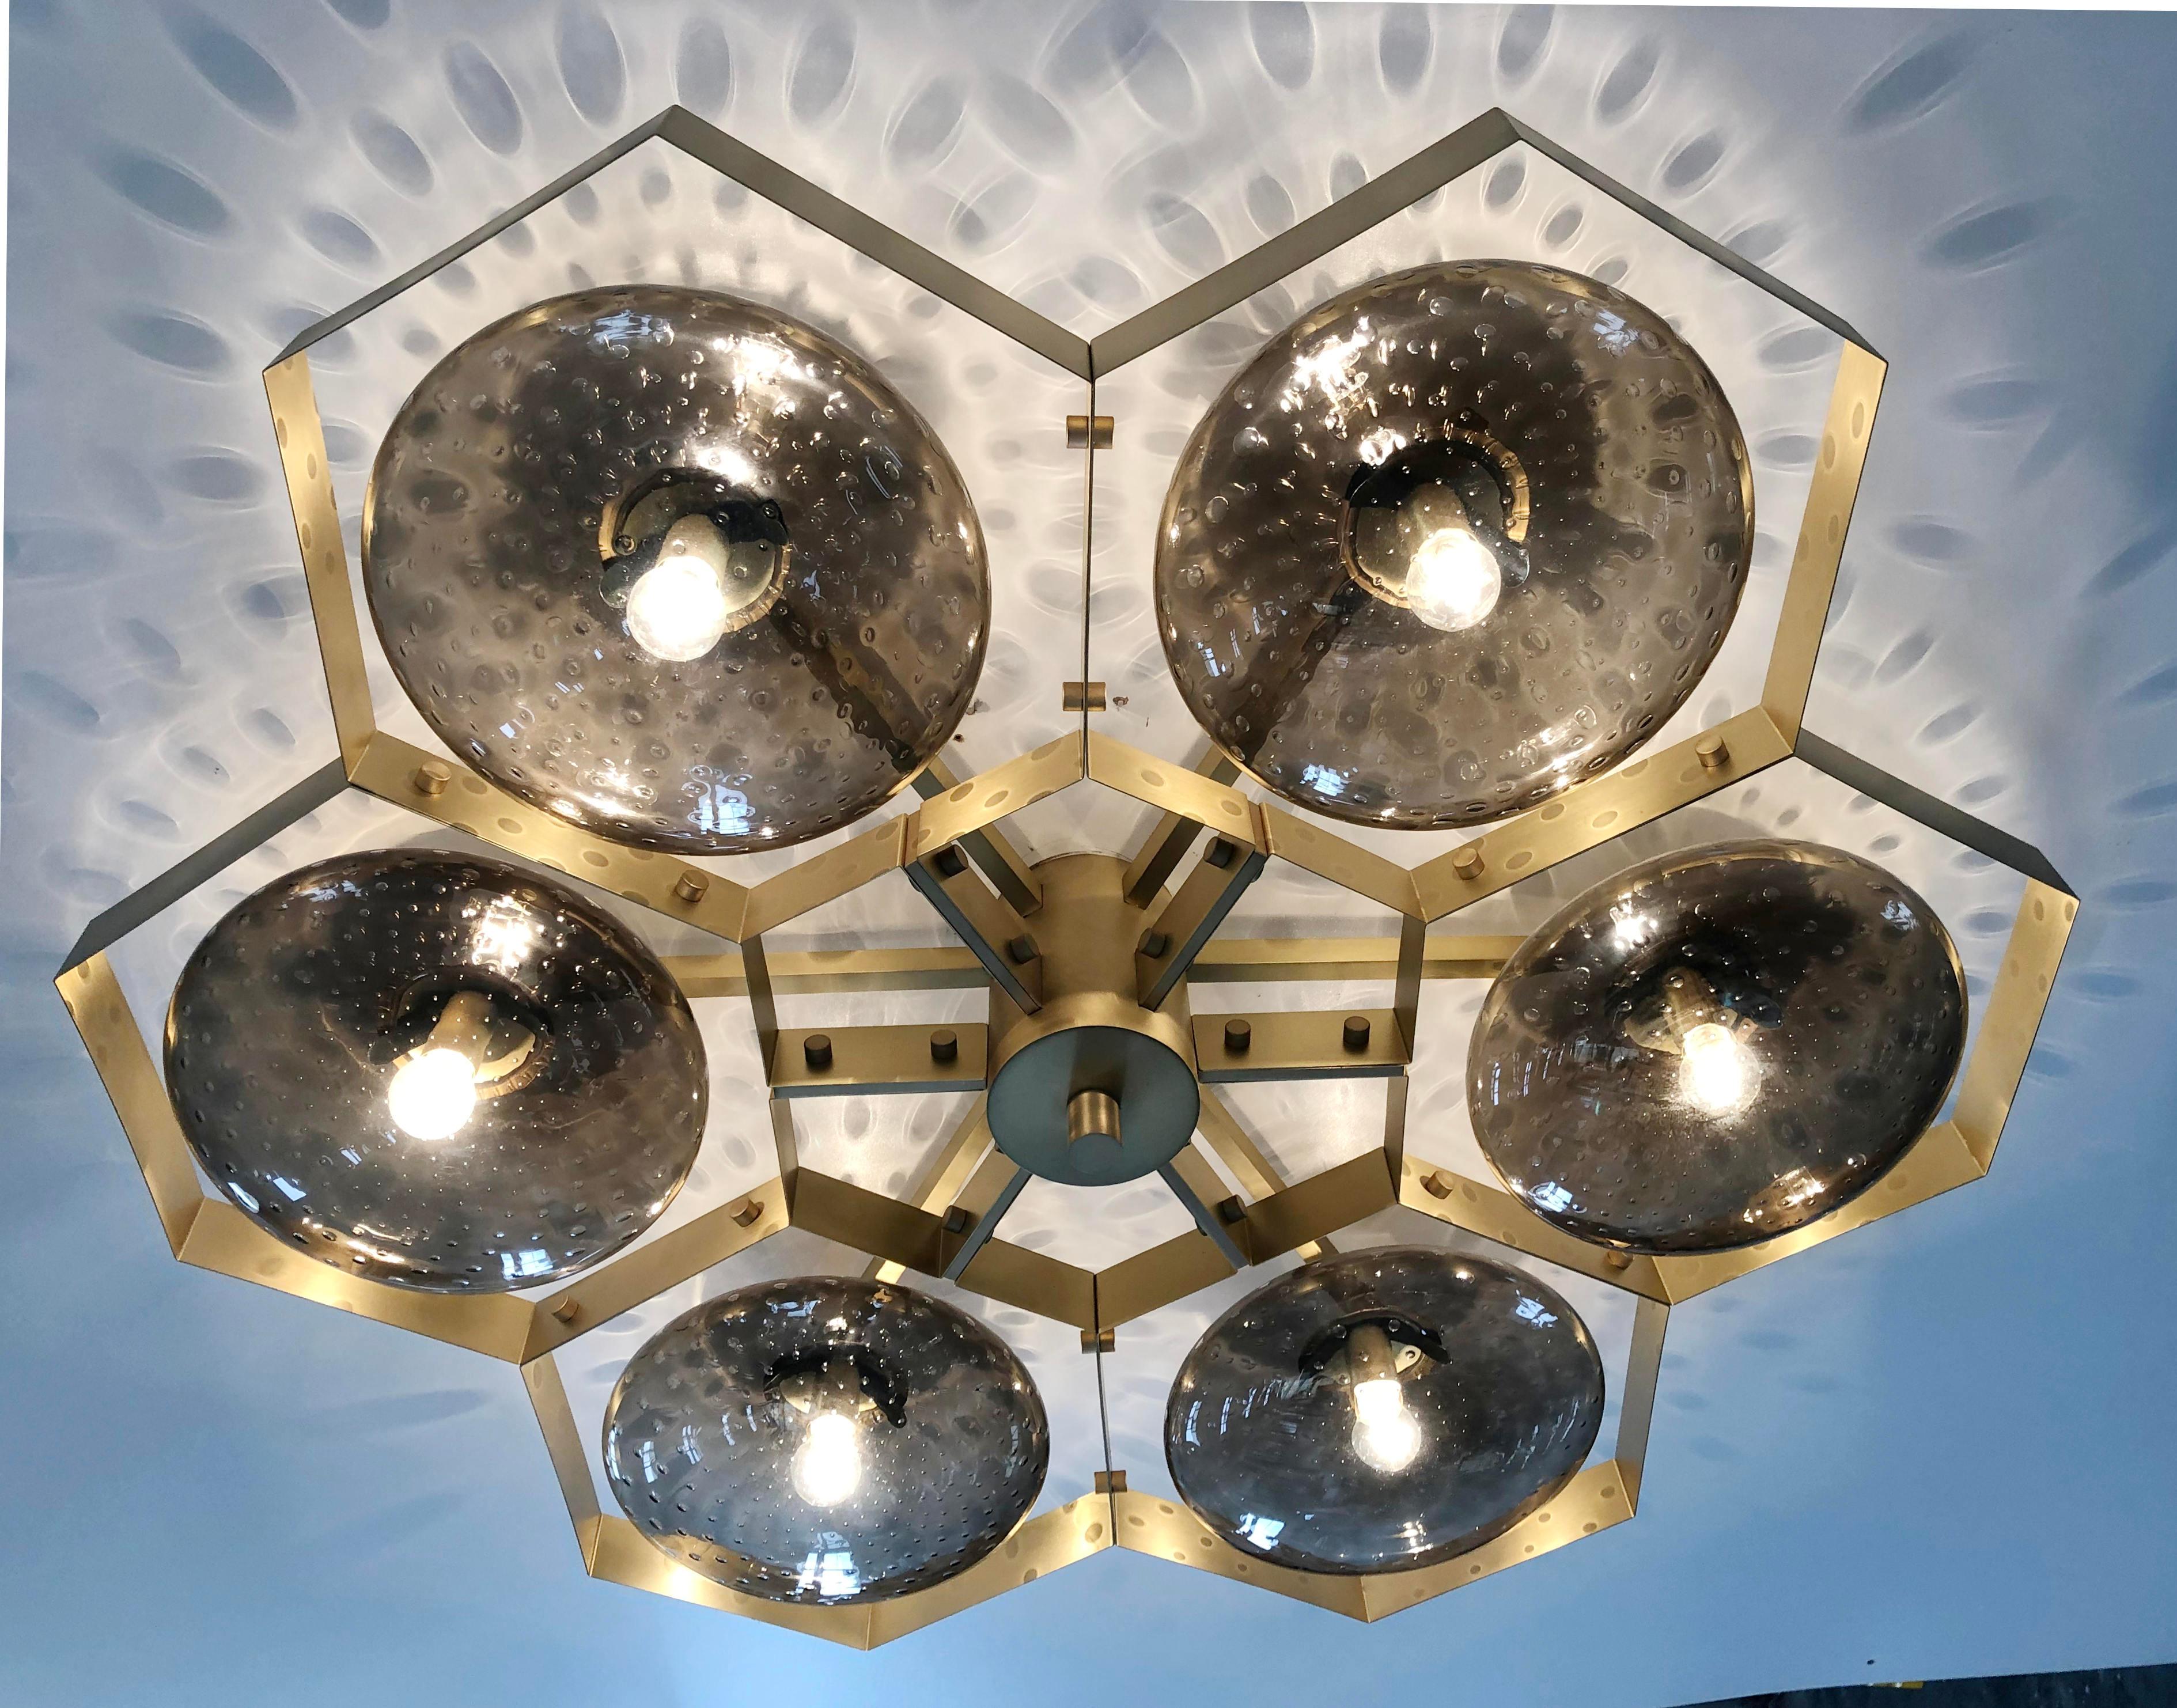 Italienische Unterputzdose mit Murano-Glasschirmen auf massivem Messingrahmen / Made in Italy
Entworfen von Fabio Ltd, inspiriert von den Stilen Angelo Lelli und Arredoluce
6 Leuchten / E12 oder E14 / je max. 40W
Maße: Durchmesser 43 Zoll / Höhe 10